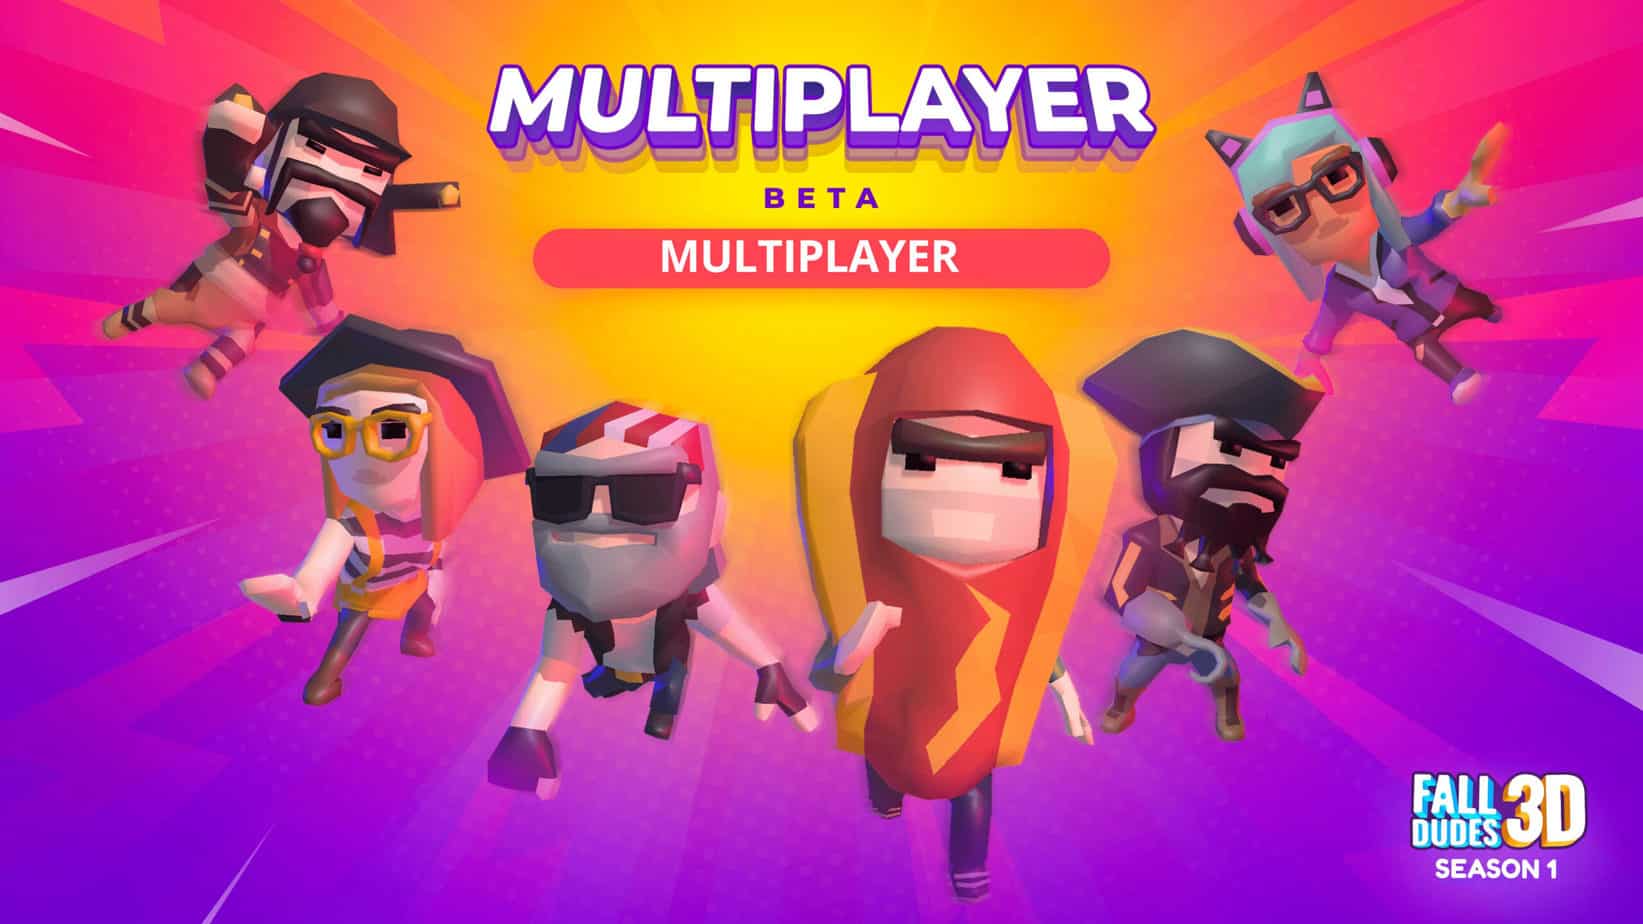 Fall Dudes: è arrivato il Multiplayer - Come diventare Beta Tester per giocare